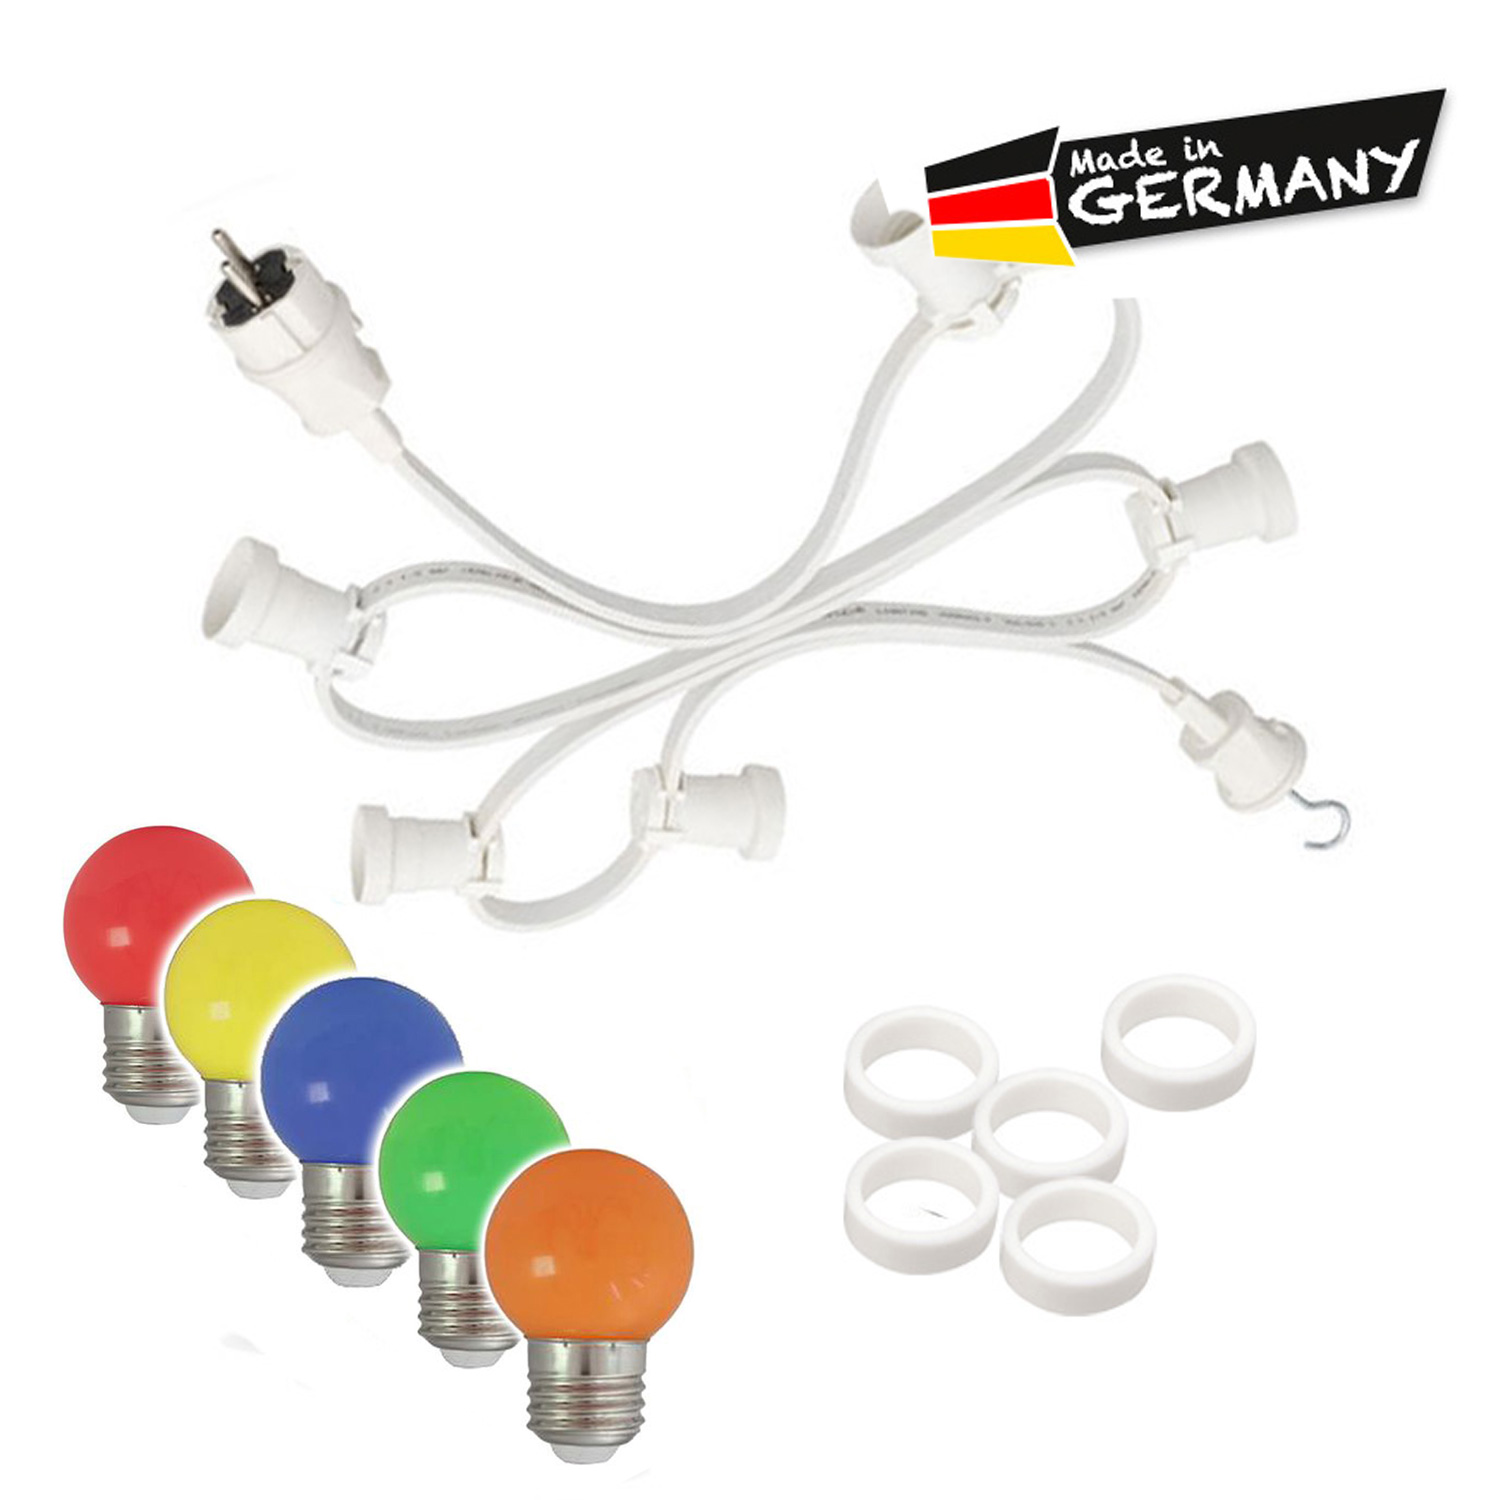 Illu-/Partylichterkette 5m - Außenlichterkette weiß - Made in Germany - 5 x bunte LED Kugellampen